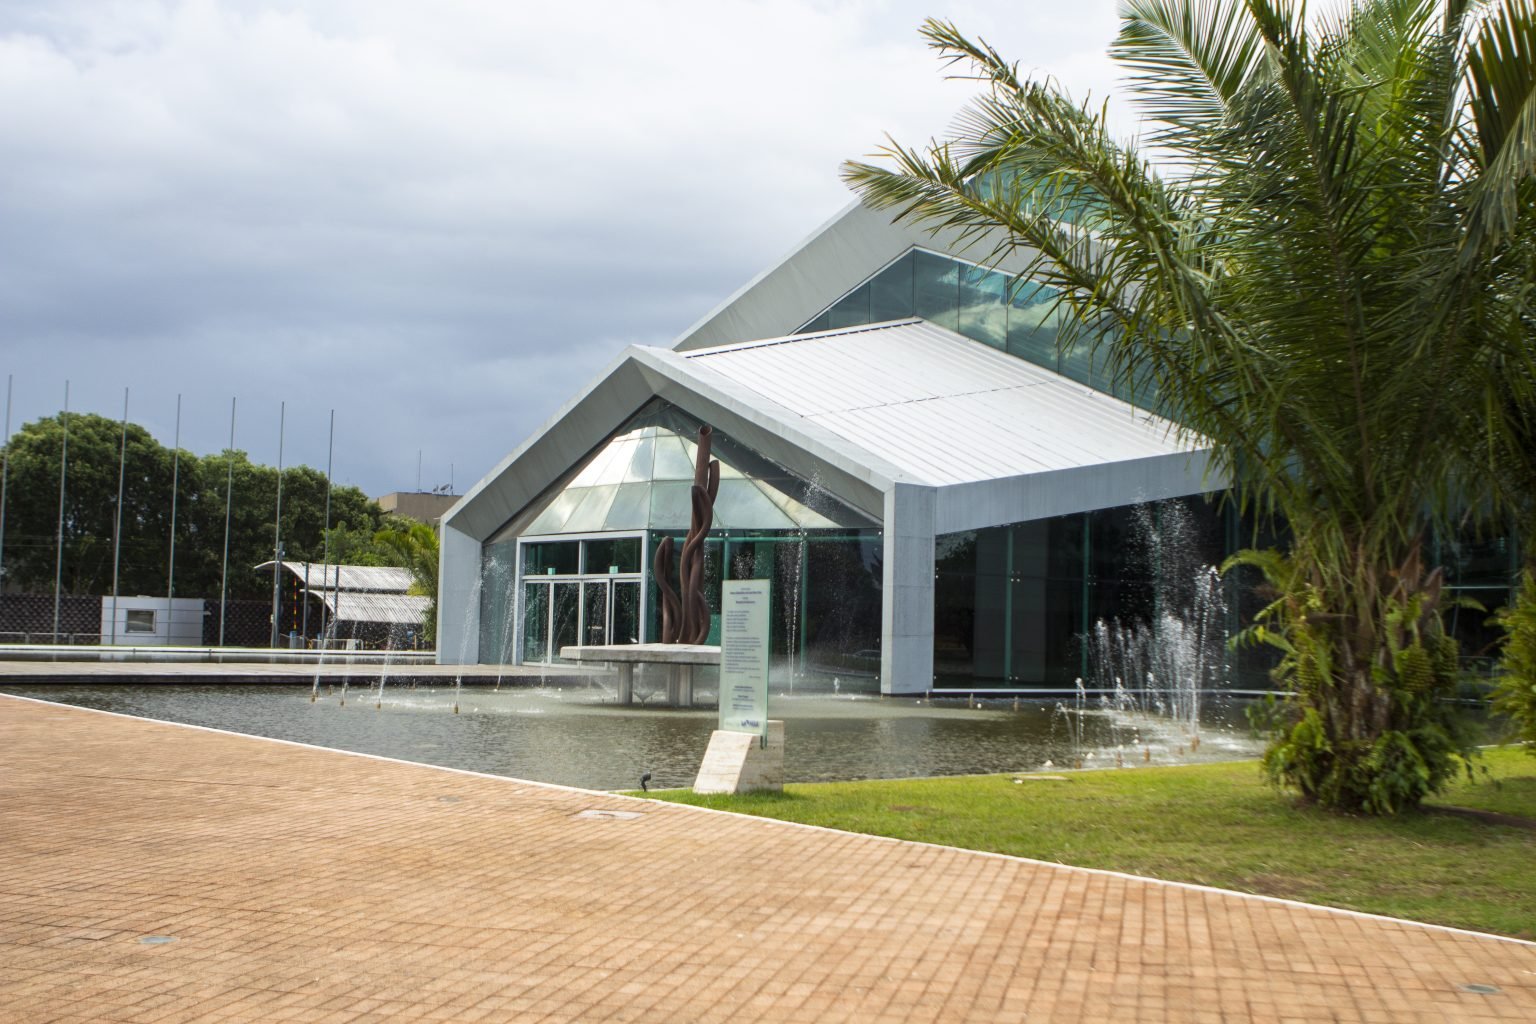 No momento você está vendo Hangar irá sediar evento Pré-COP “Diálogos Amazônicos” em agosto.